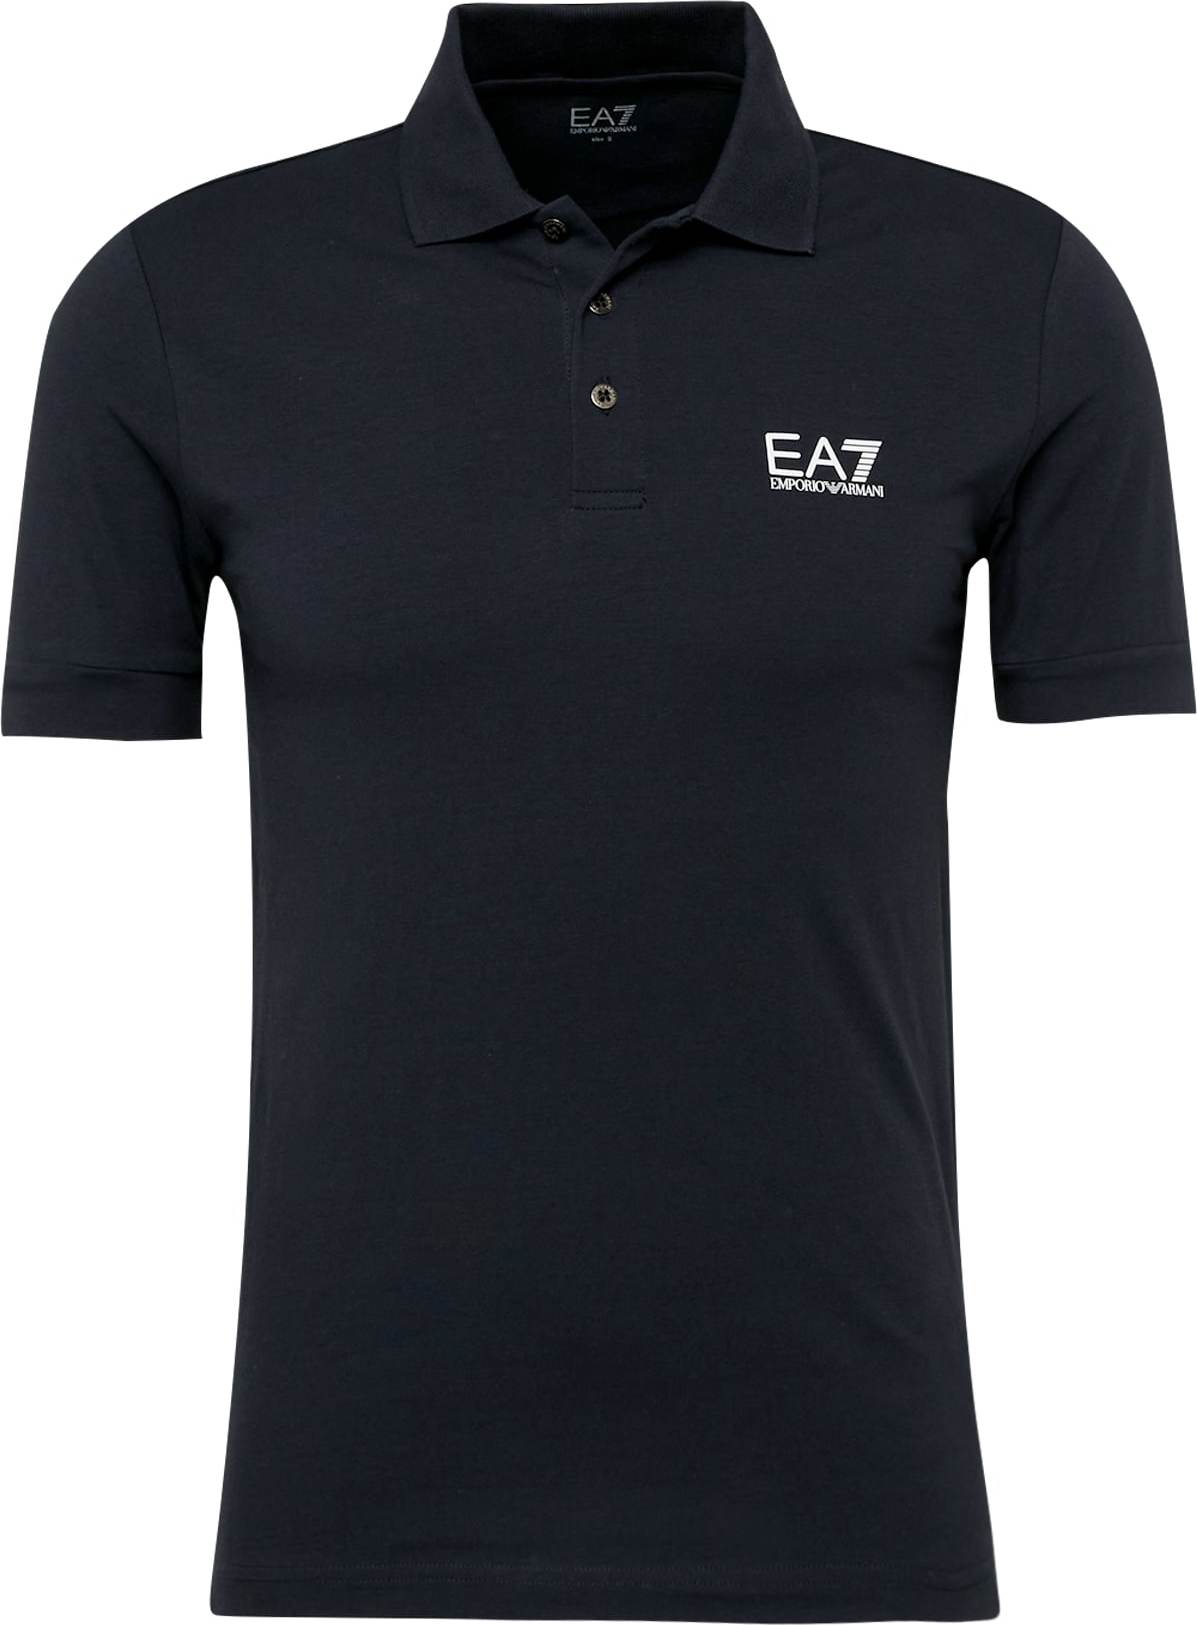 EA7 Emporio Armani Tričko námořnická modř / bílá